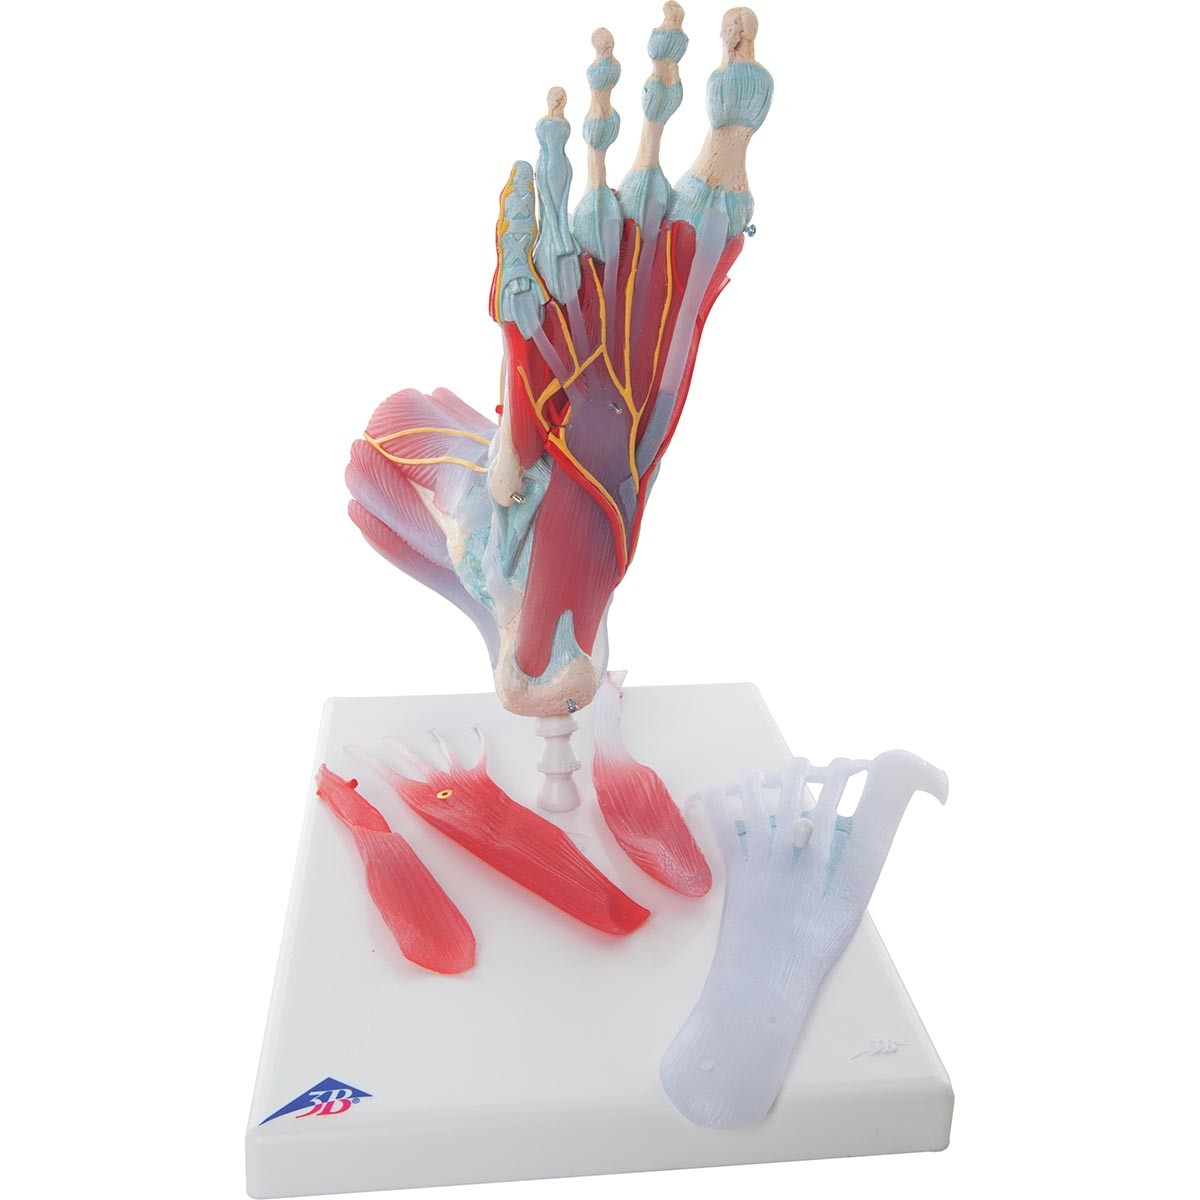 Modell des Fußskeletts mit Bändern und Muskeln